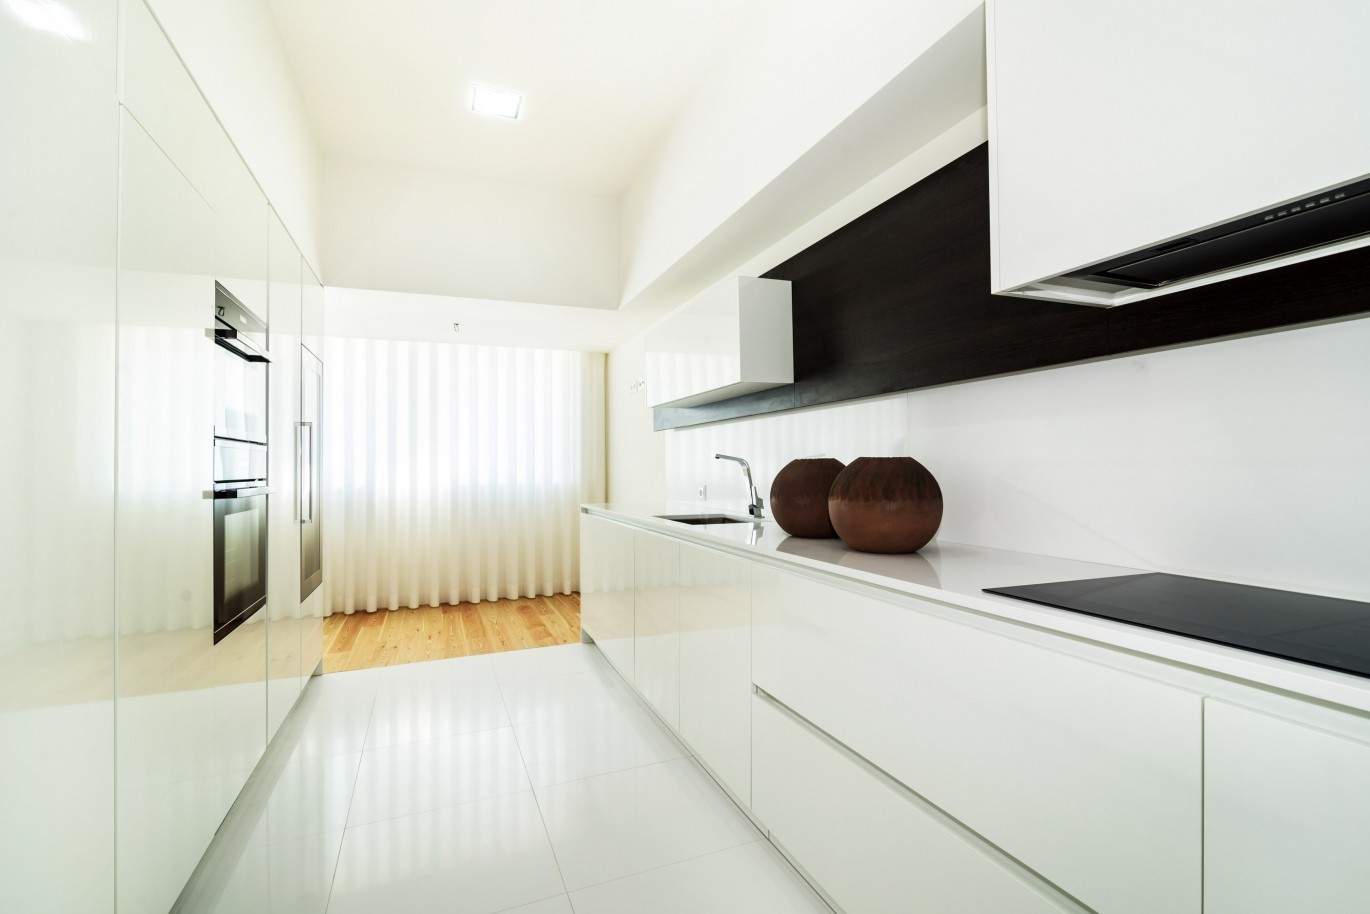 Duplex apartment, Luxus, in der Nähe des Meeres, Leça da Palmeira, Portugal_38304